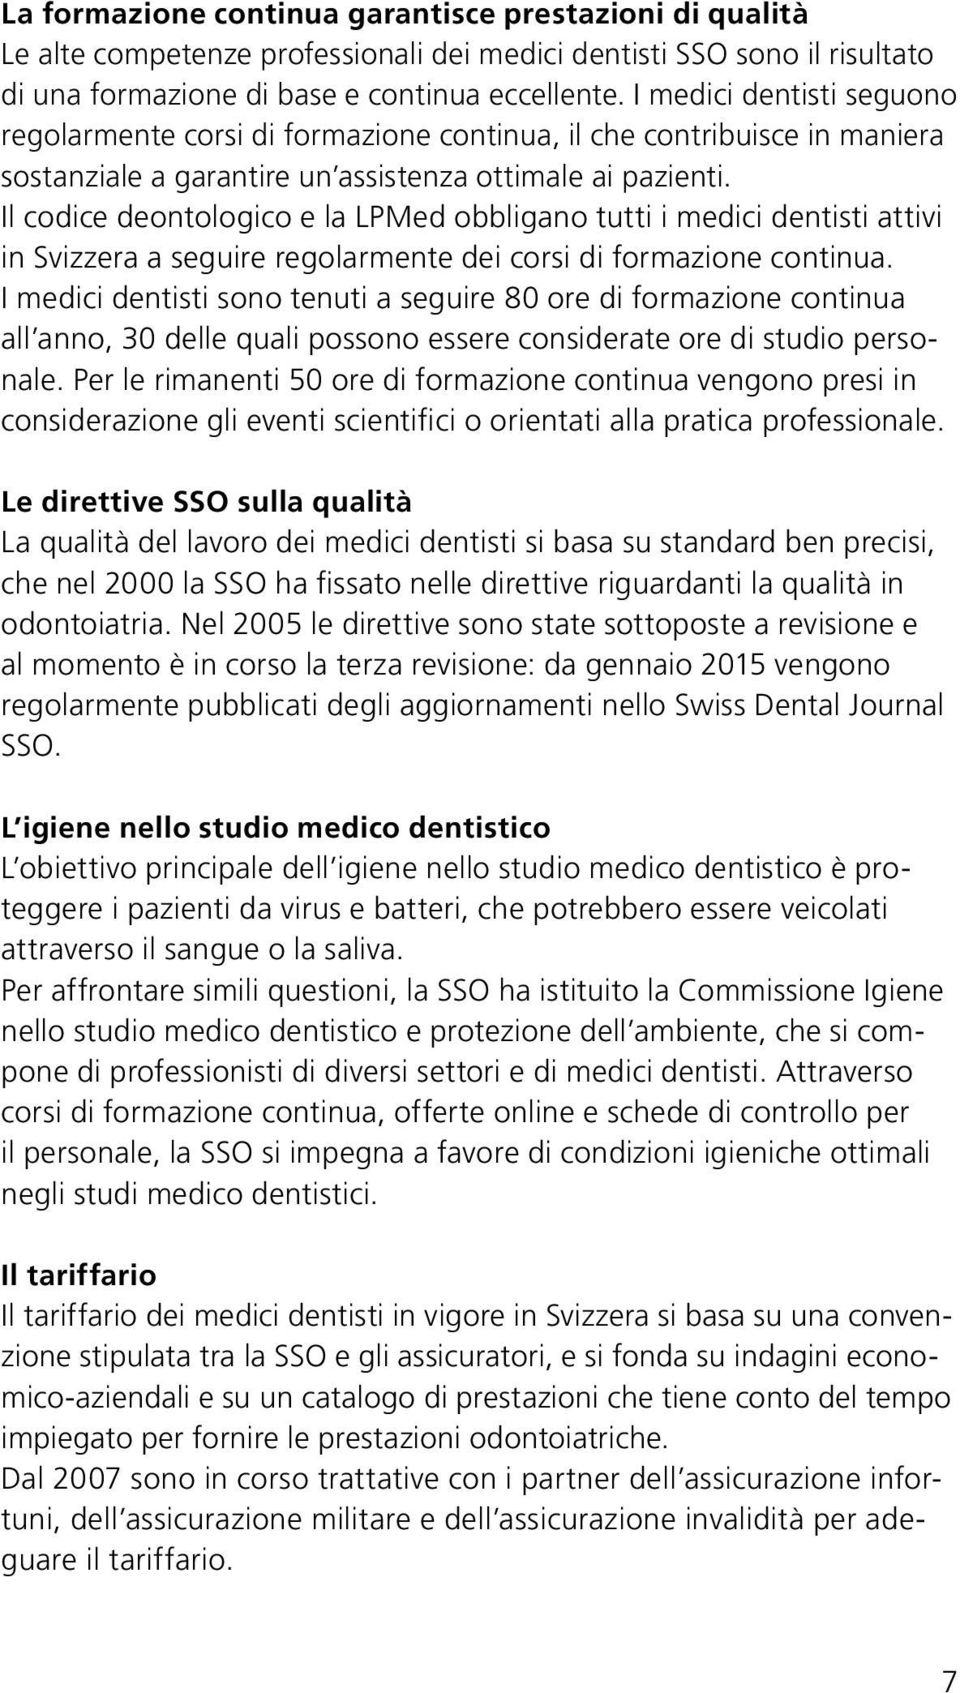 Il codice deontologico e la LPMed obbligano tutti i medici dentisti attivi in Svizzera a seguire regolarmente dei corsi di formazione continua.